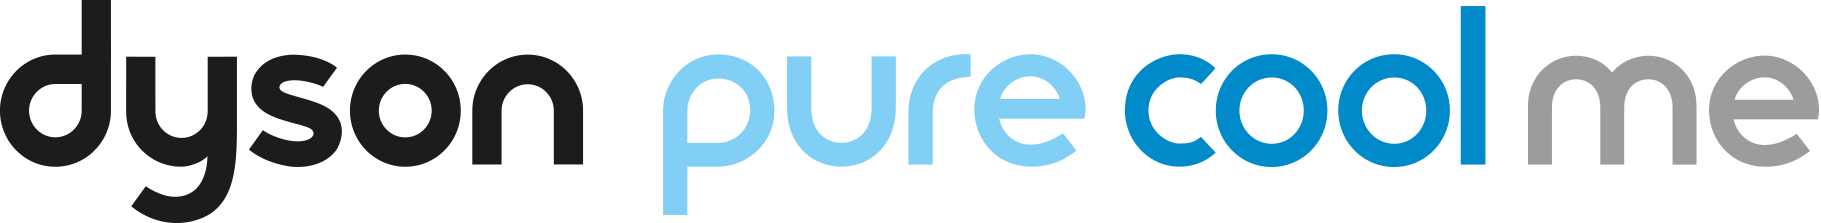 Logo du Dyson Pure Cool Me